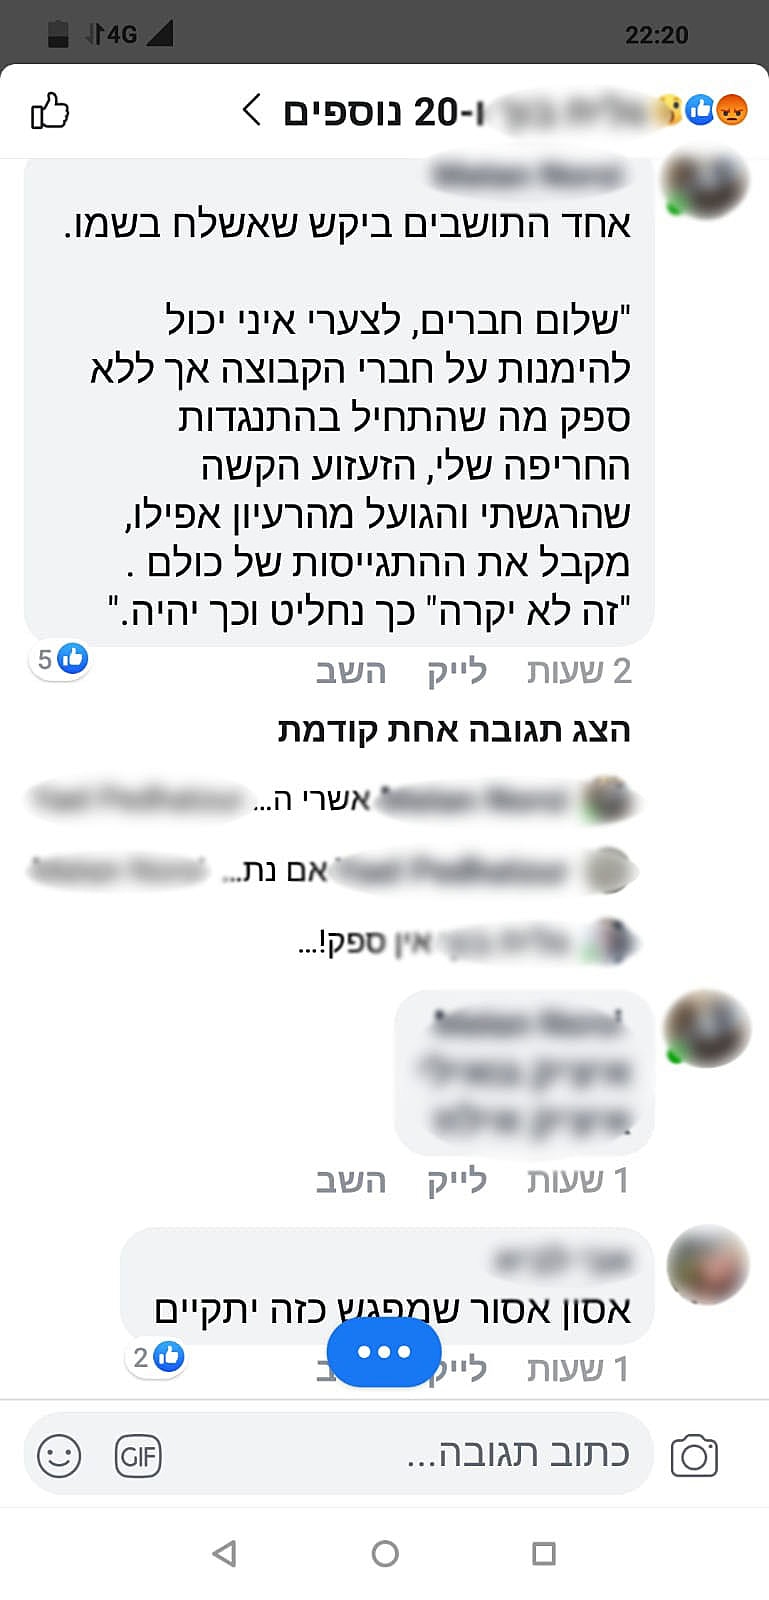 הפוסט בפייסבוק אודות המפגש משותף בין ישראלים לפלסטינים